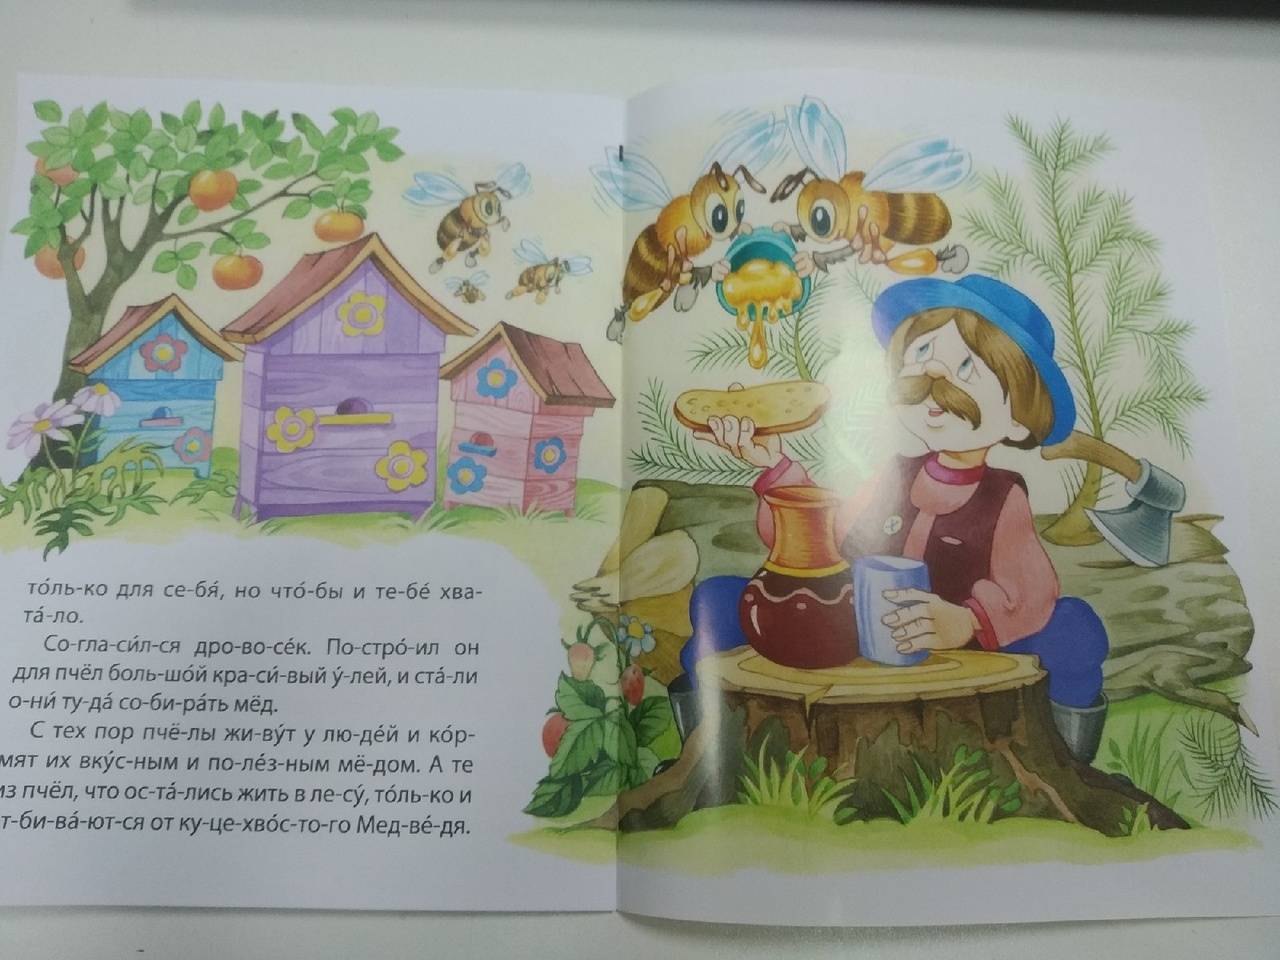 Детские сказки читать онлайн - детские сказки почему у медведя короткий хвост индонезийские сказки детские сказки народов мира онлайн, детская библиотека